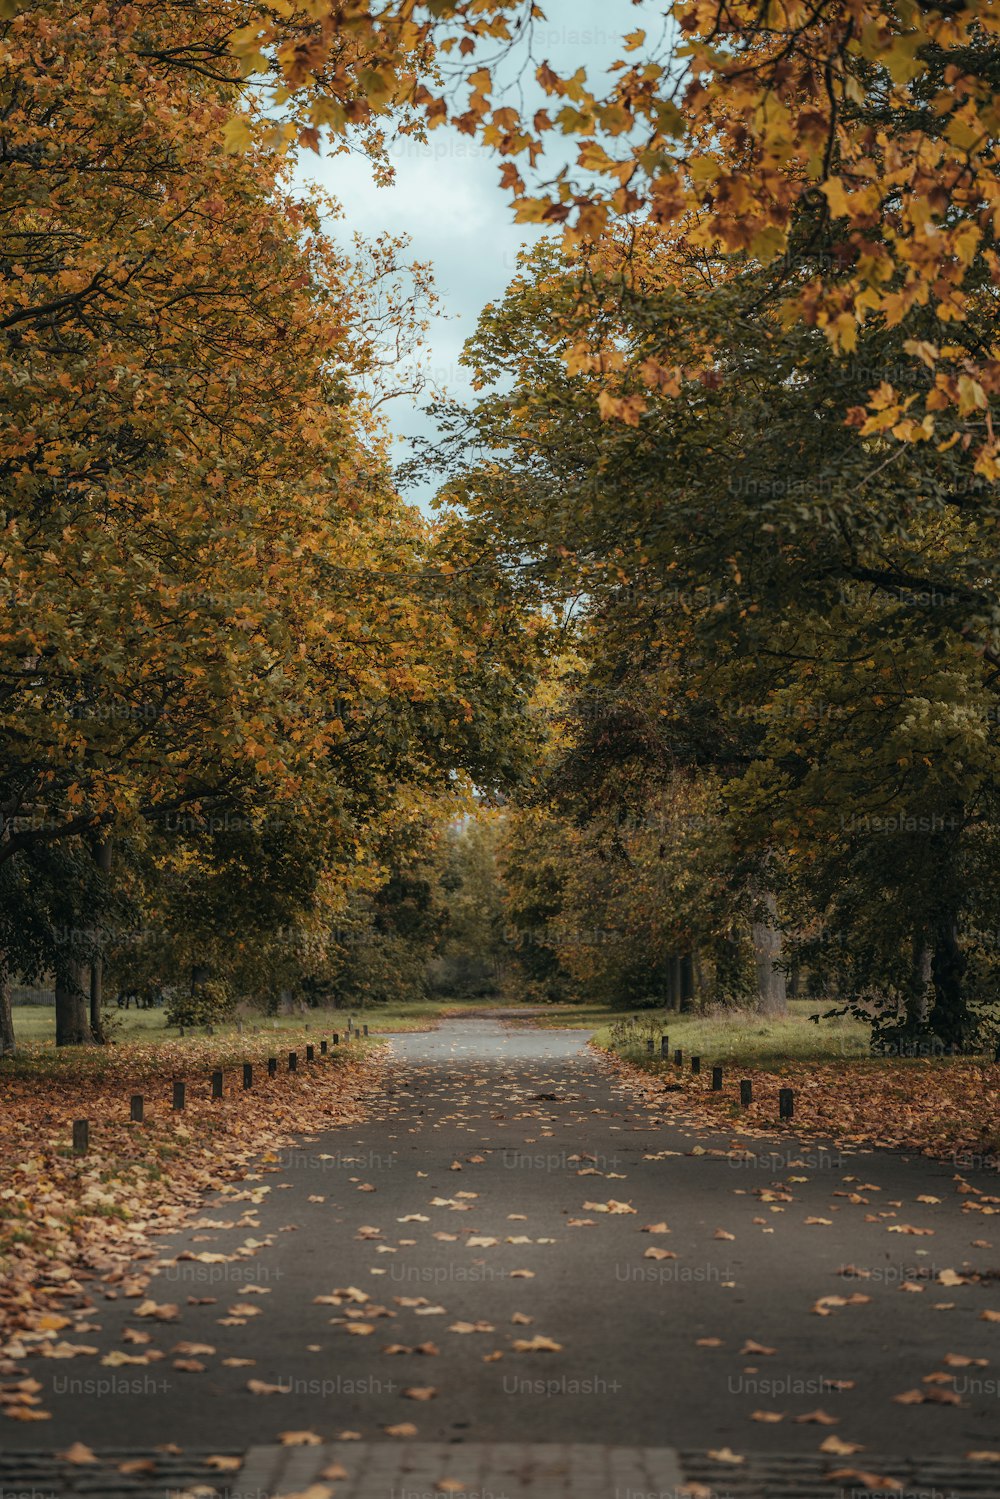 Une route bordée d’arbres avec beaucoup de feuilles au sol